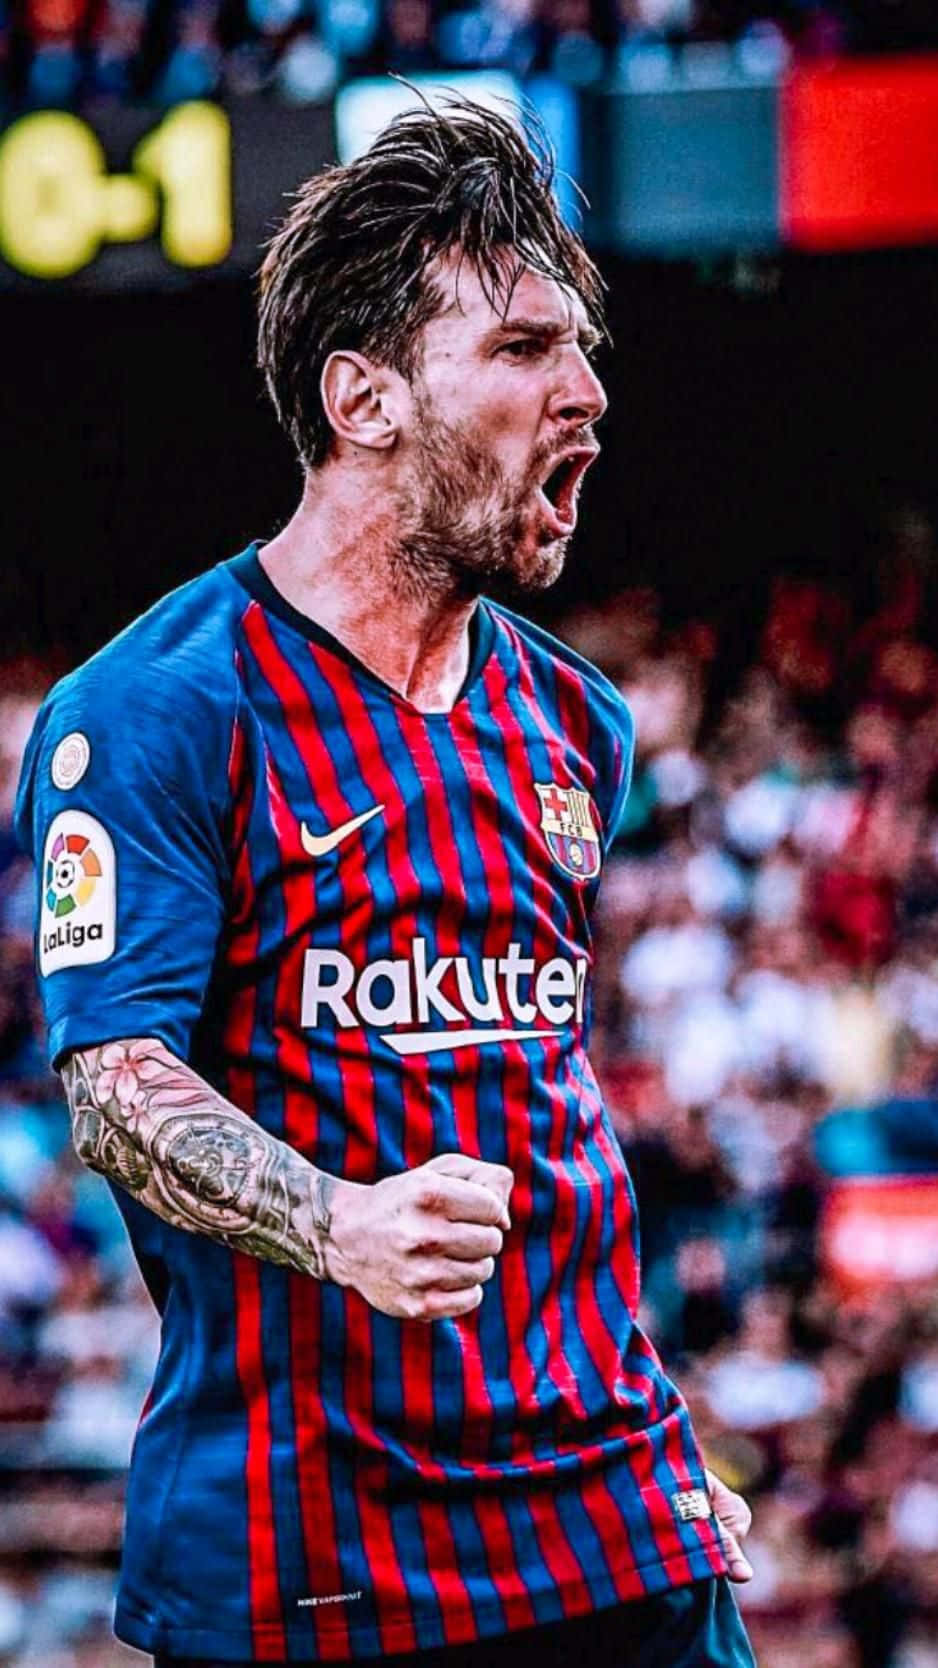 Fußballstarlionel Messi Zeigt Sein Können Auf Dem Rasen. Wallpaper